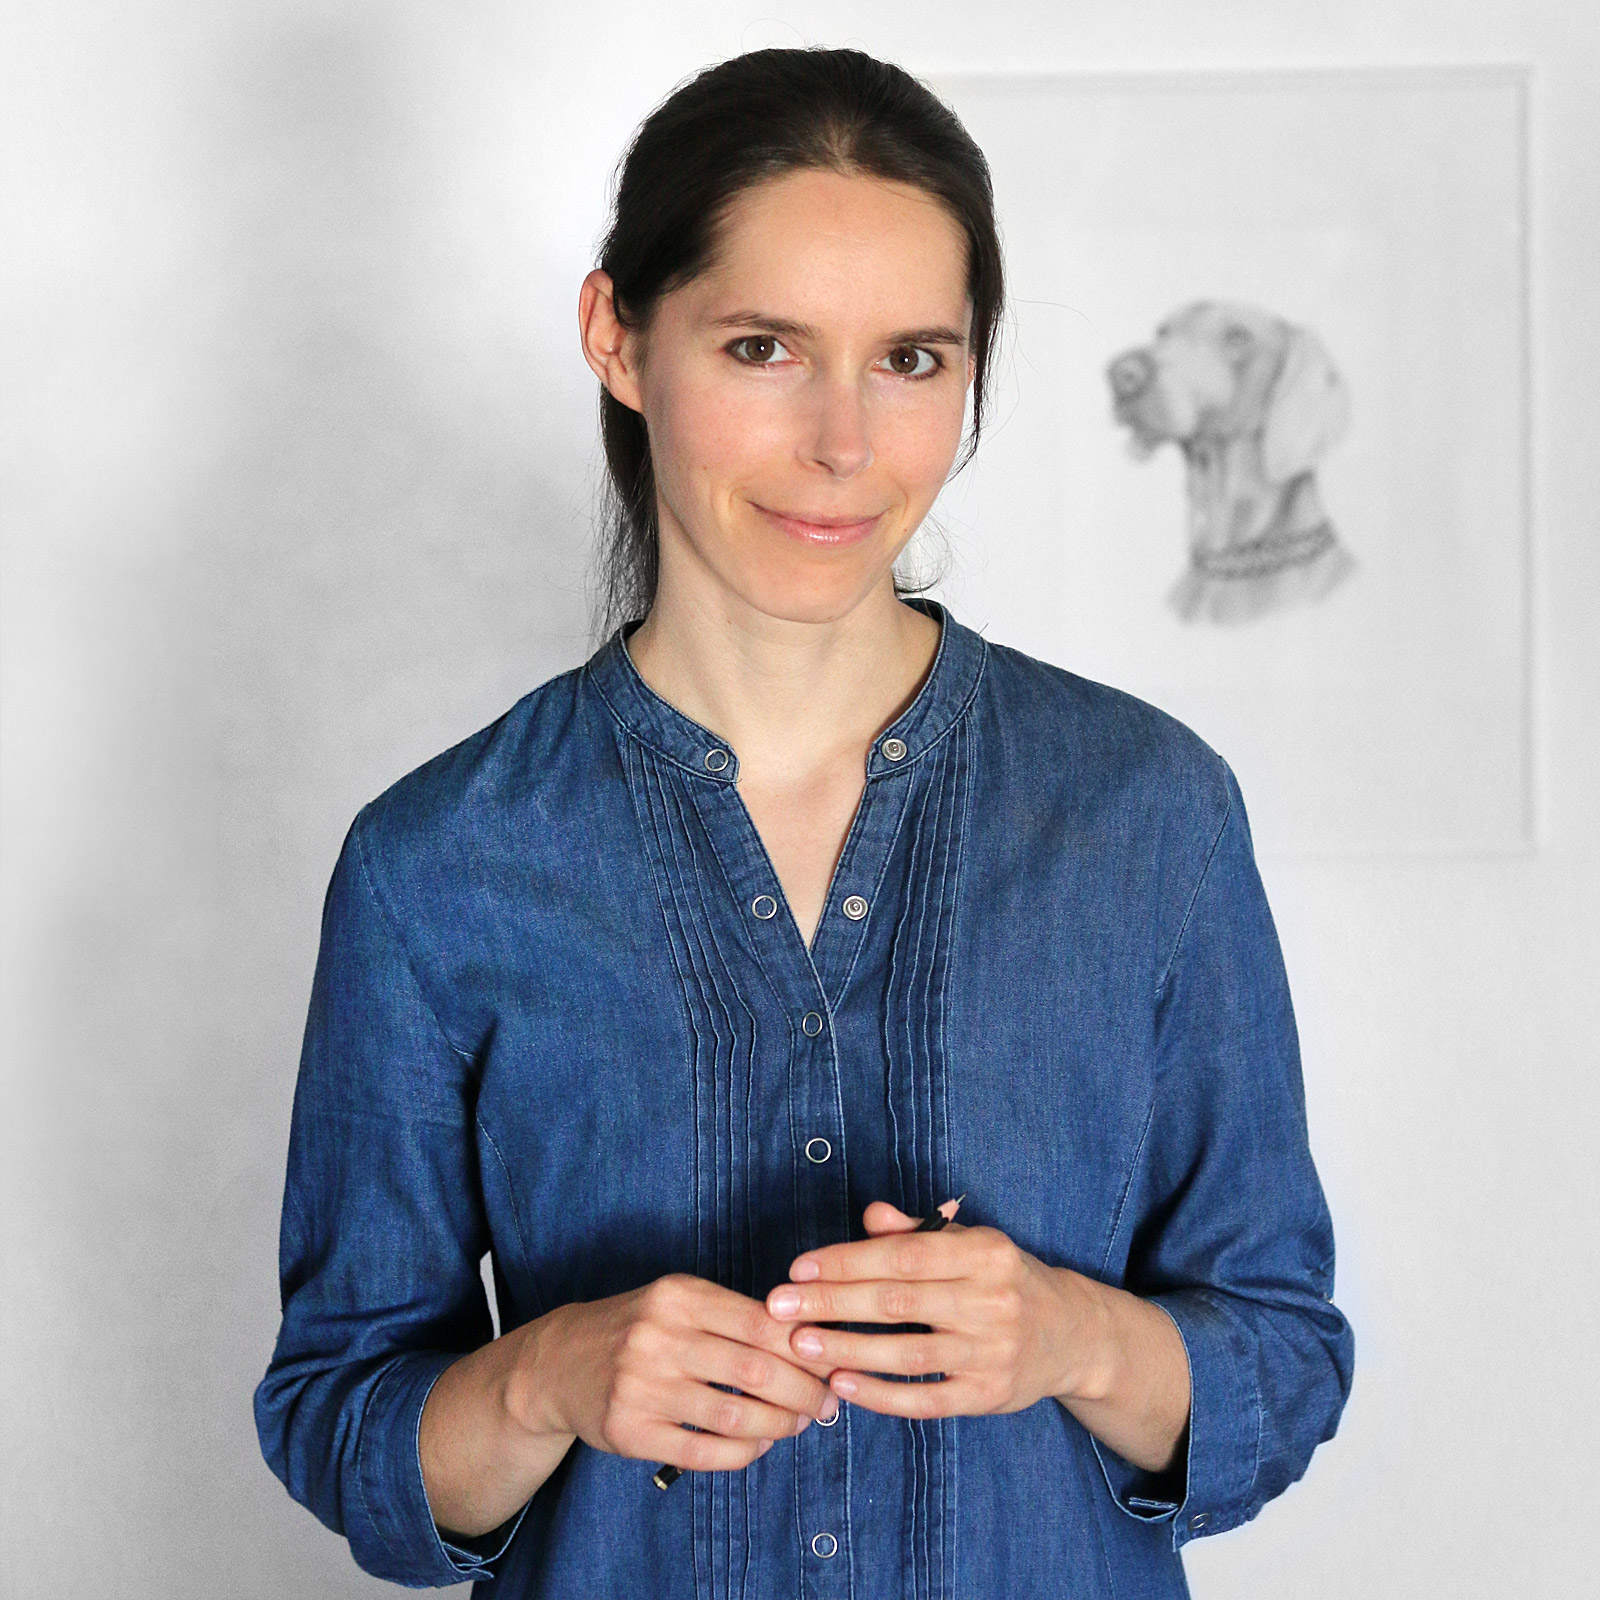 The artist Lisa Albrecht